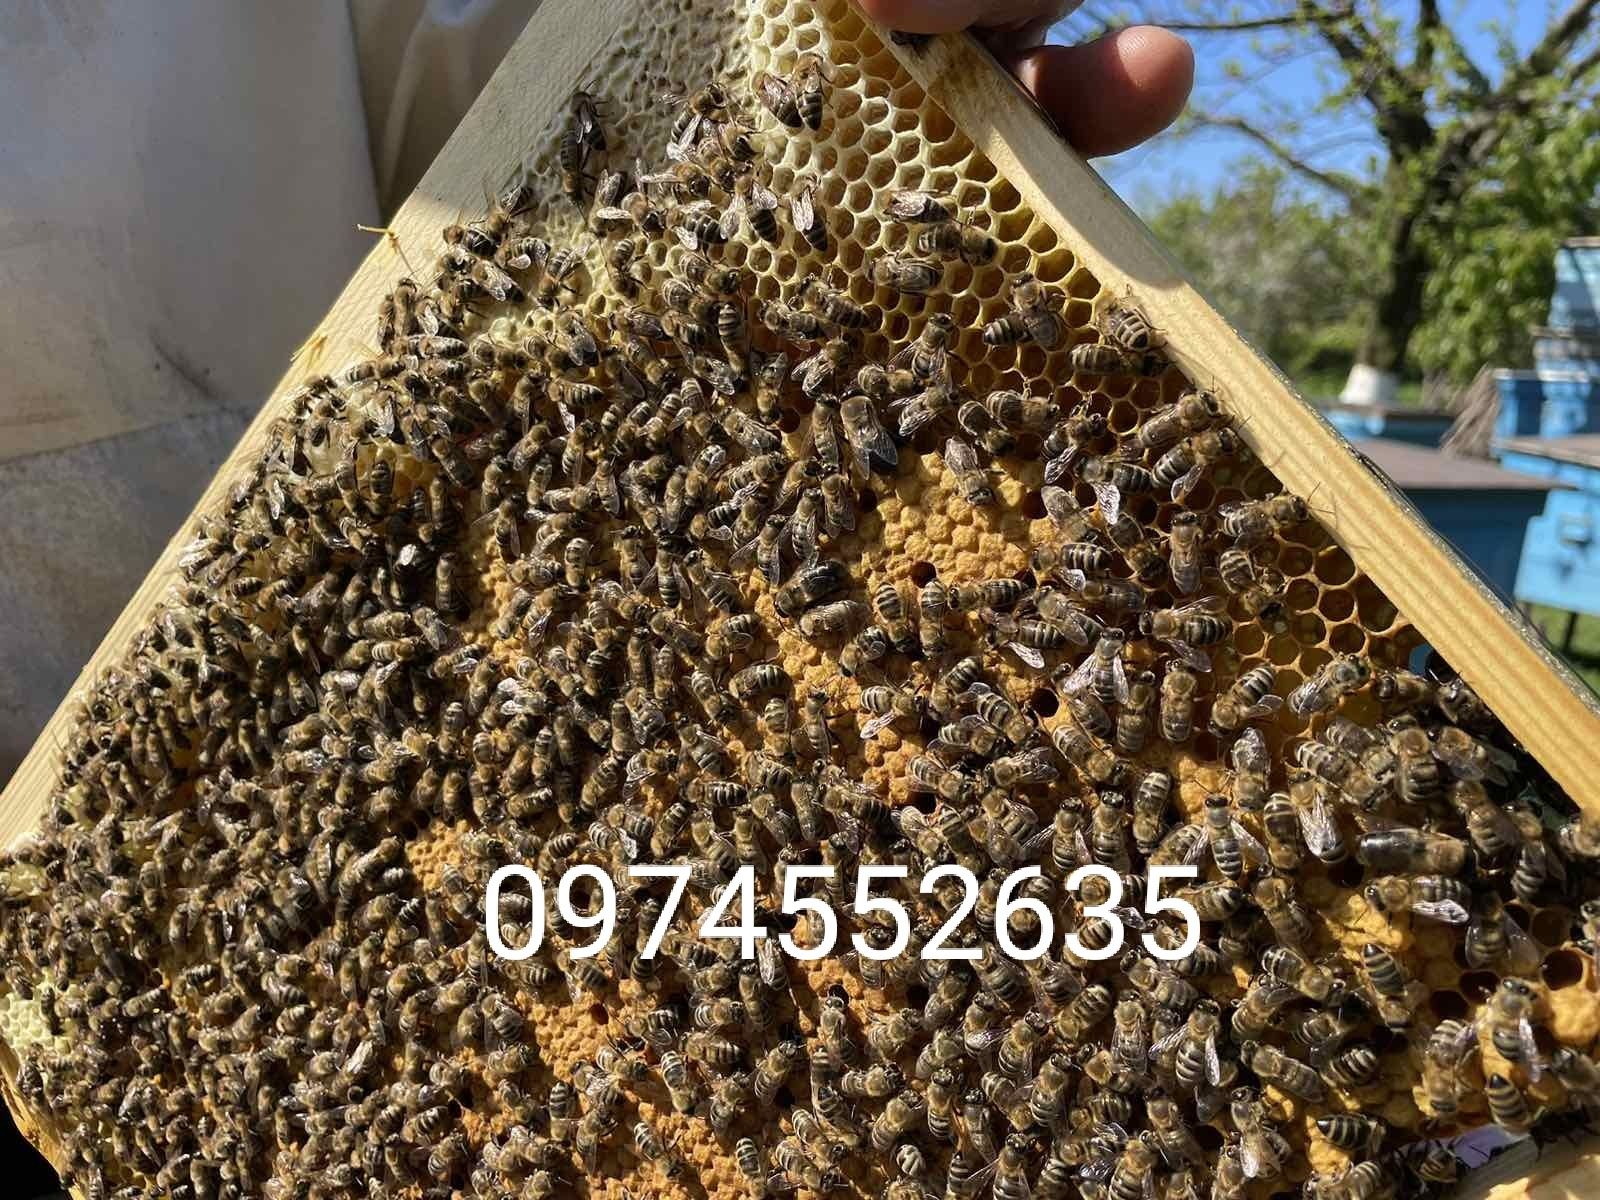 Пчелопакеты, пчелосемьи, сушь